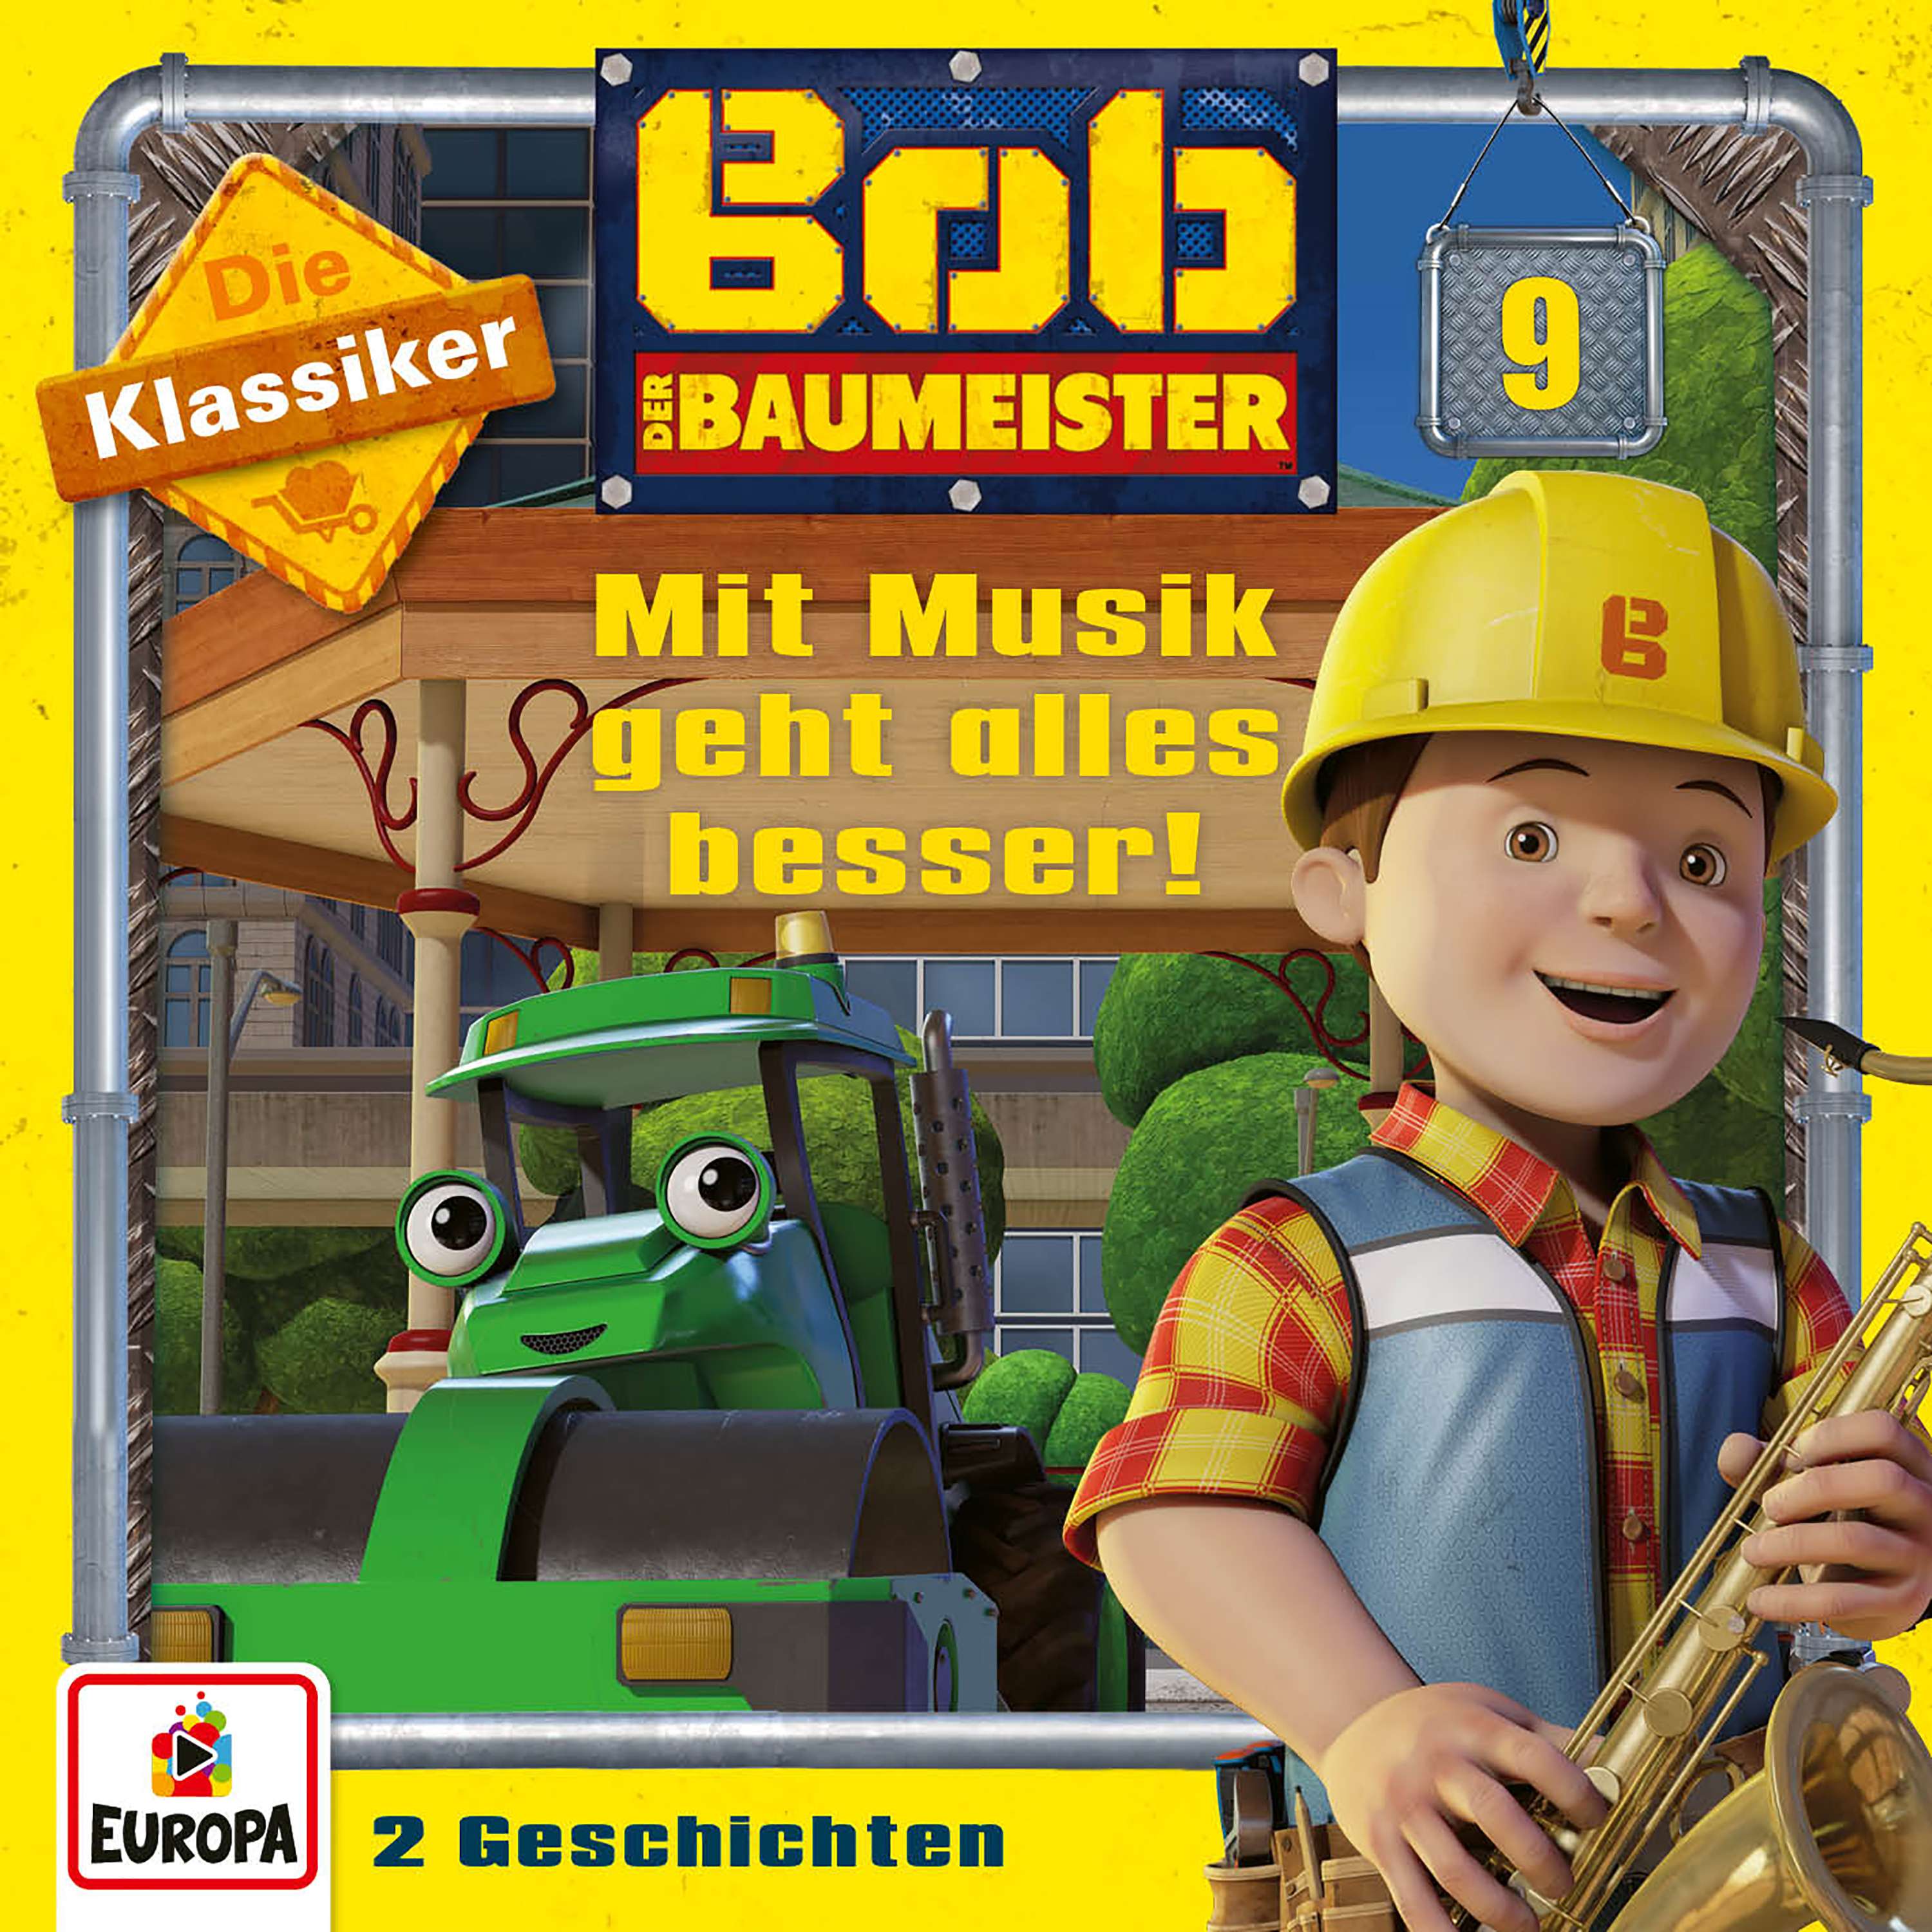 Bob der Baumeister - Mit Musik geht alles besser! (Die Klassiker)